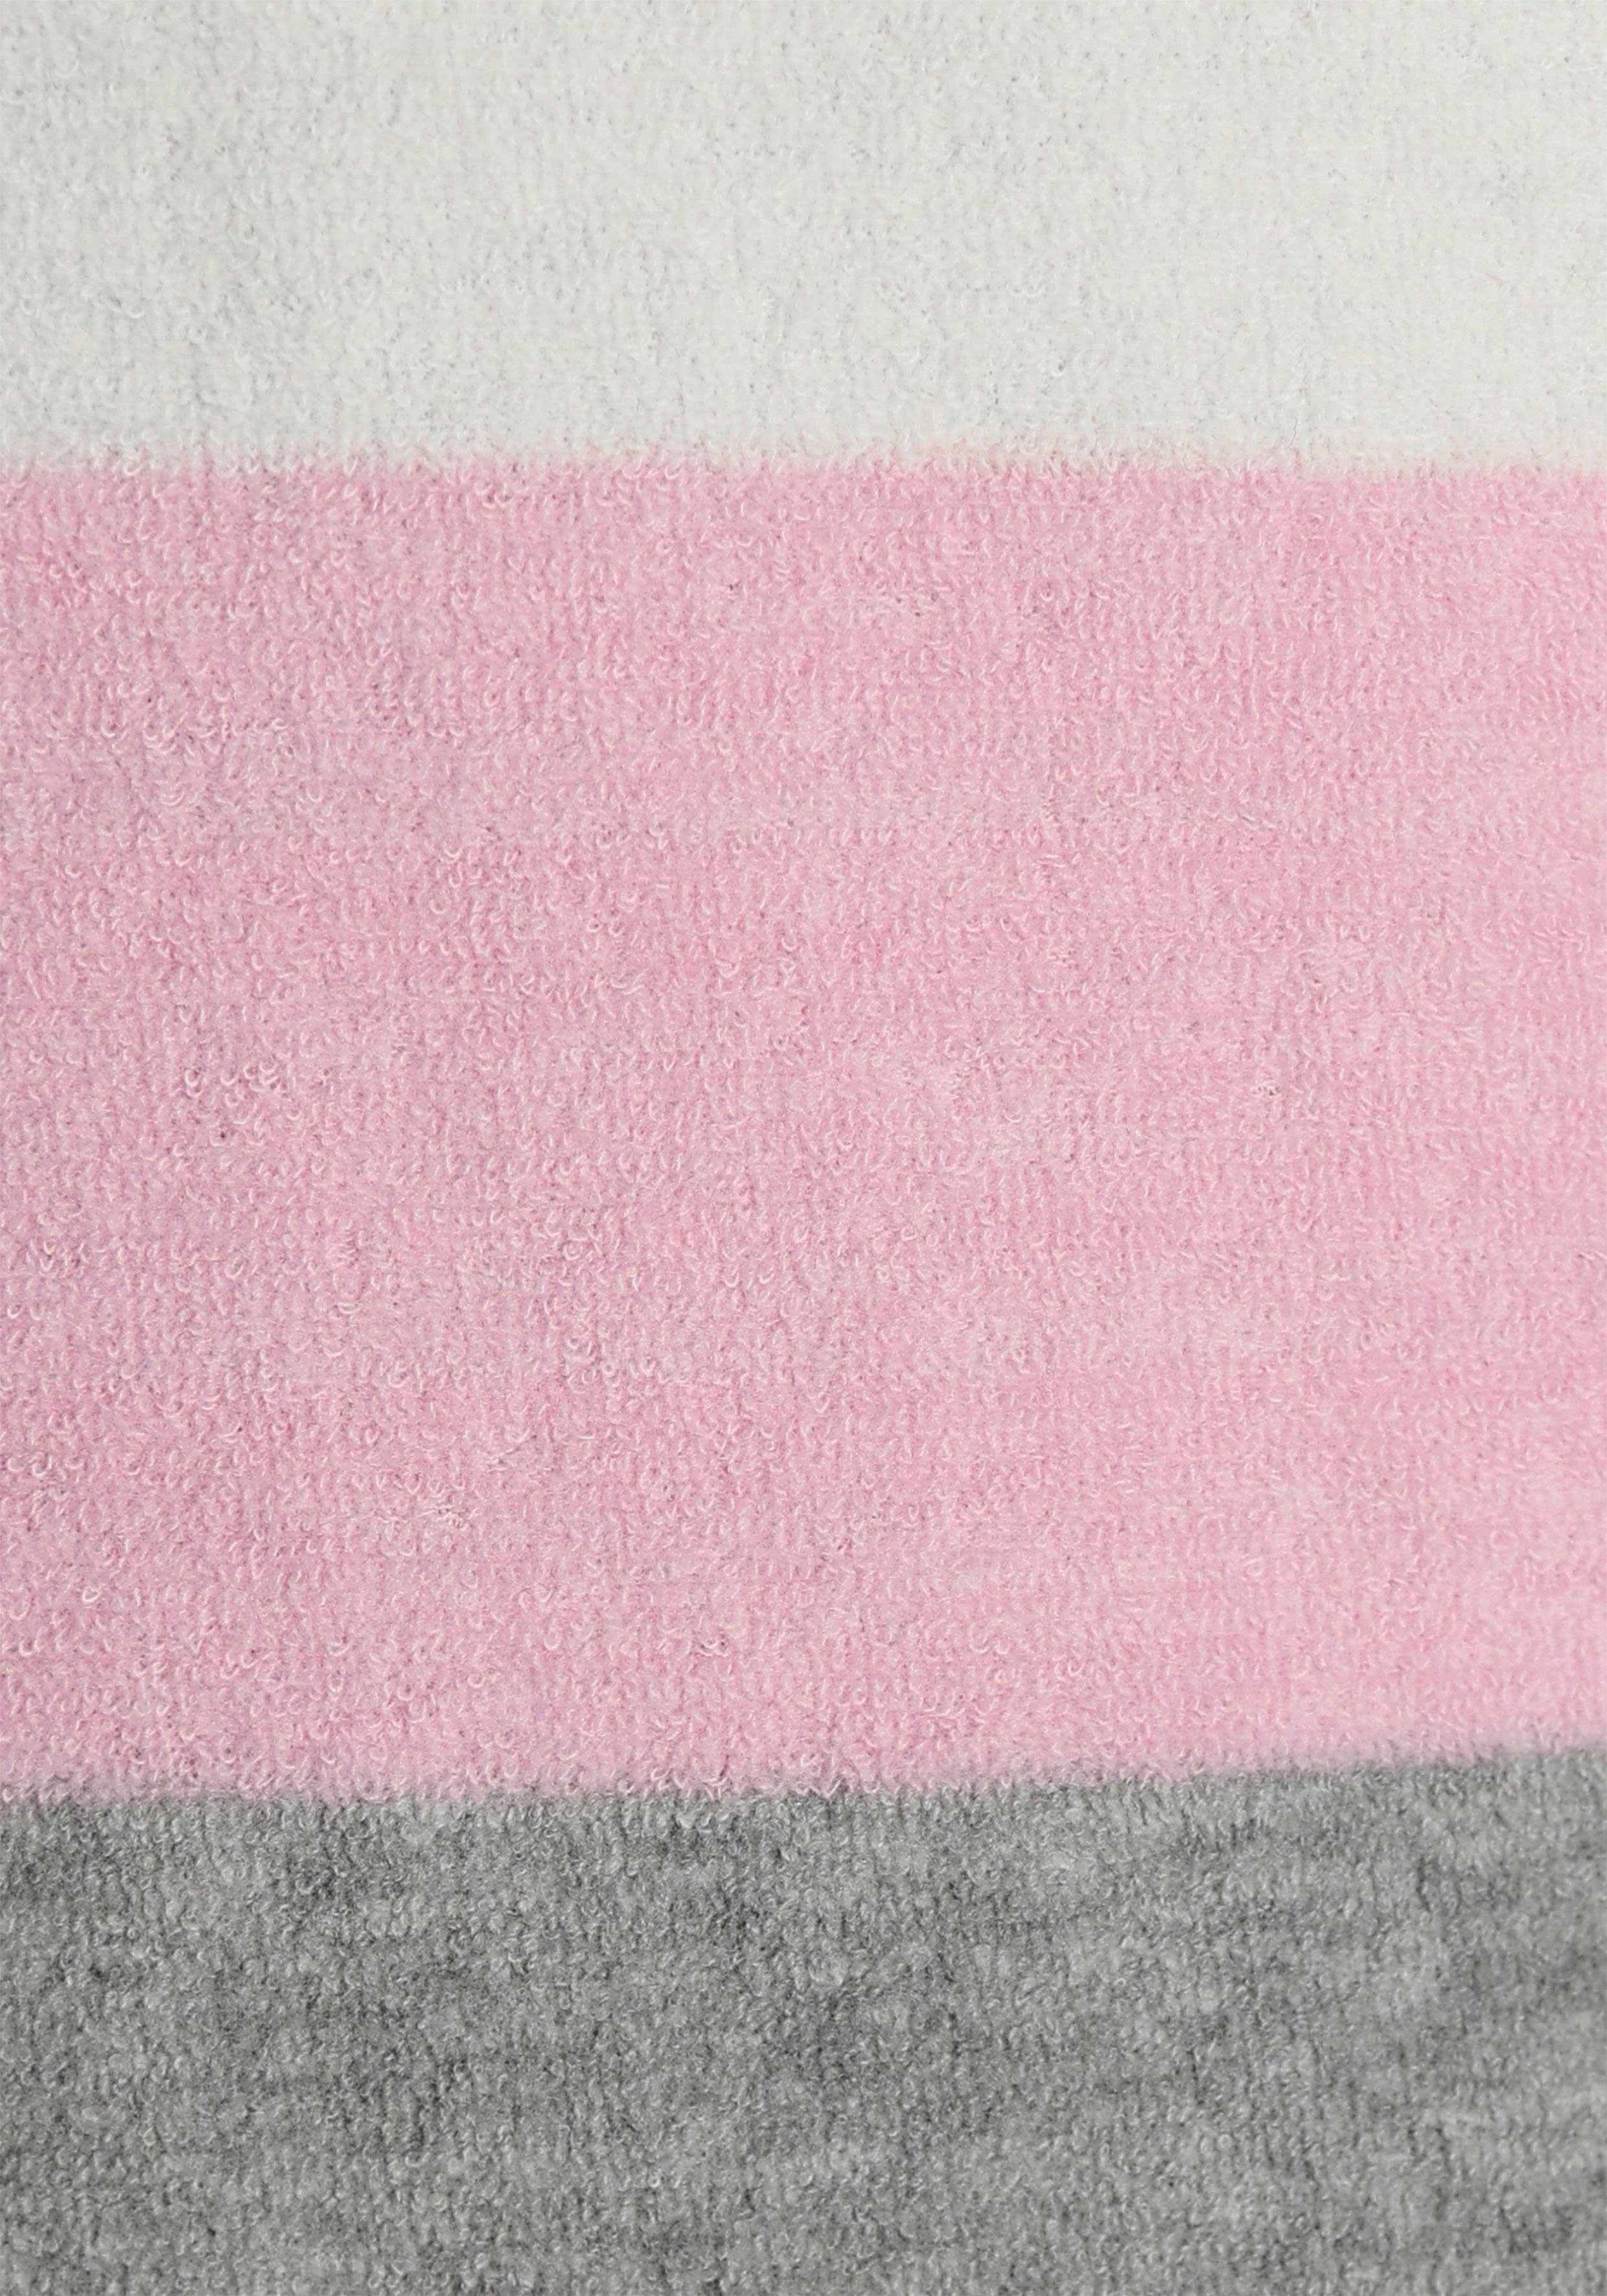 Vivance Dreams Pyjama (2 tlg) mit Streifen und Colorblock weichem grau-rosa Frottée aus